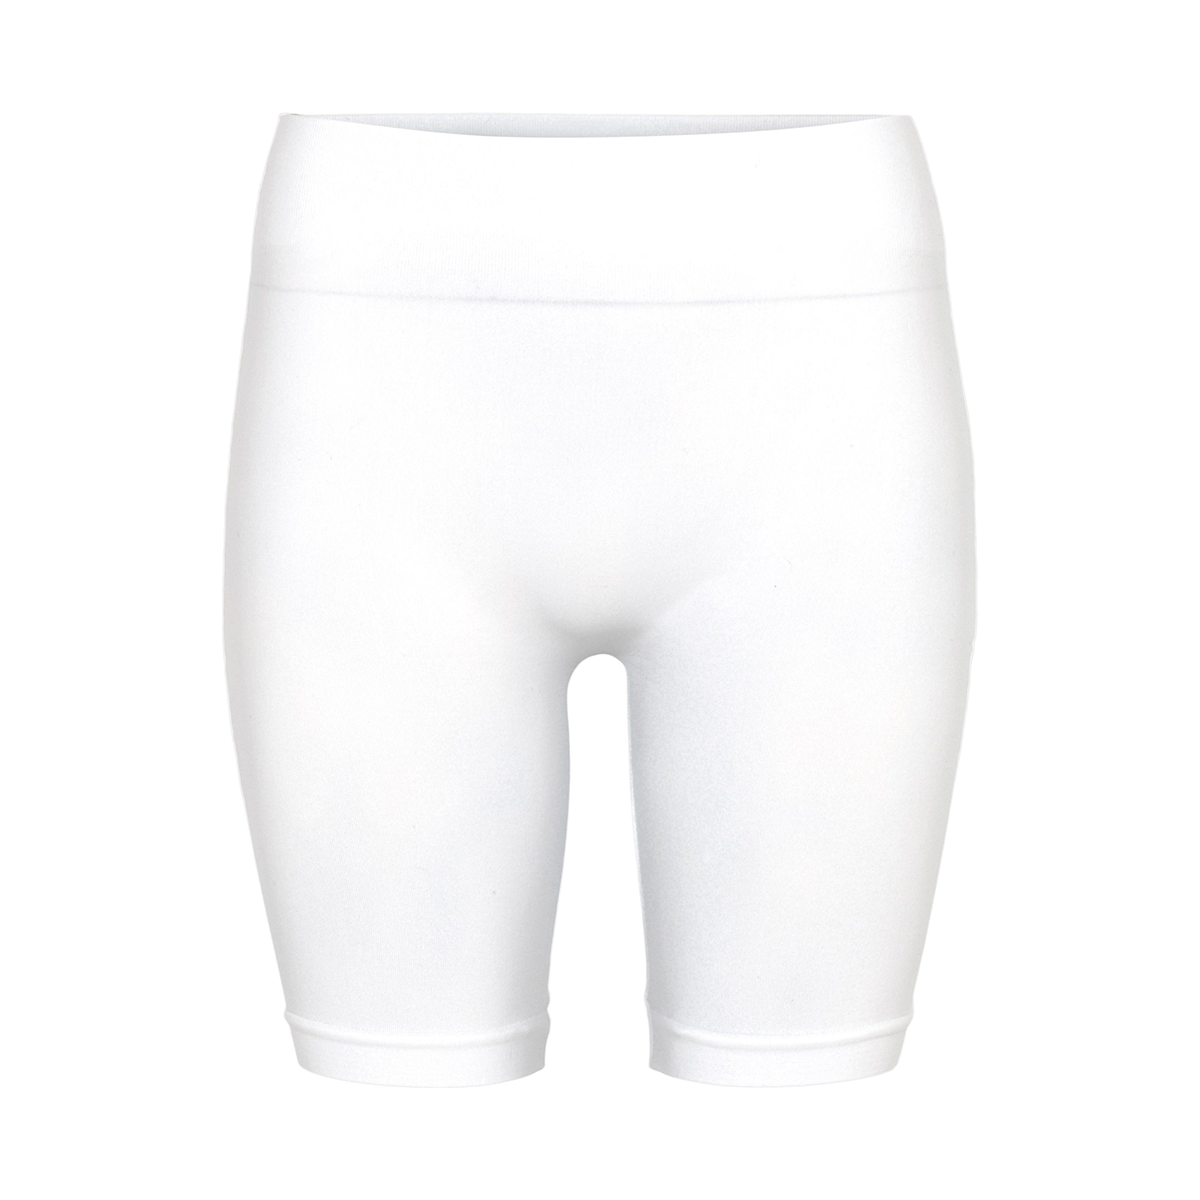 Billede af Decoy Seamless Shorts -, Farve: Hvid, Størrelse: S/M, Dame